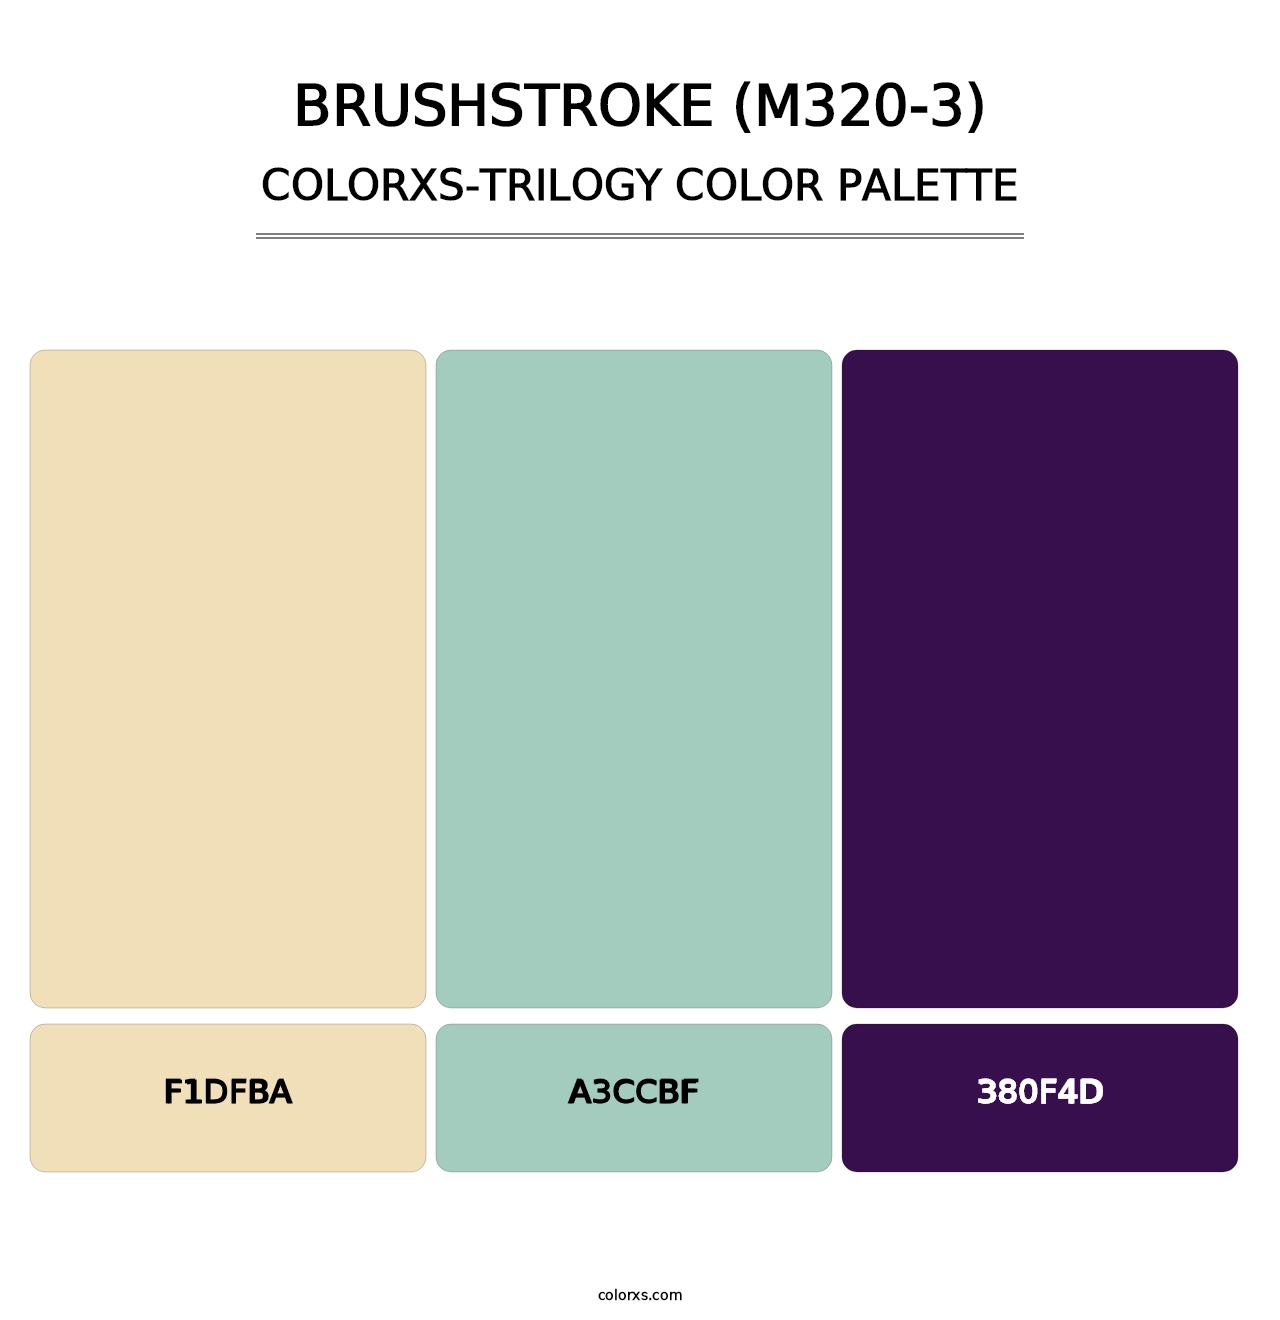 Brushstroke (M320-3) - Colorxs Trilogy Palette